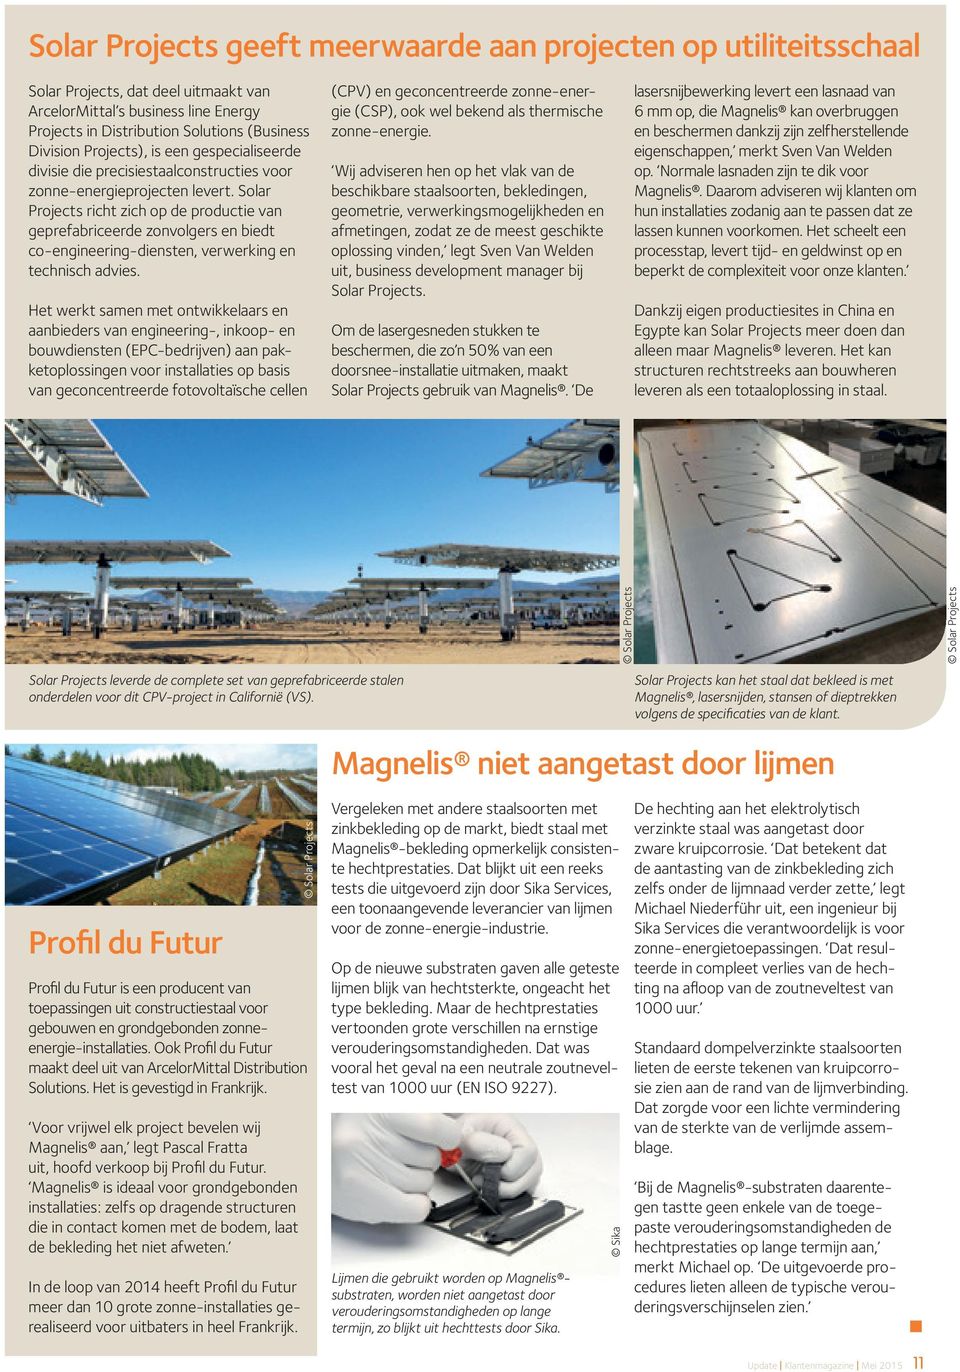 Solar Projects richt zich op de productie van geprefabriceerde zonvolgers en biedt co-engineering-diensten, verwerking en technisch advies.